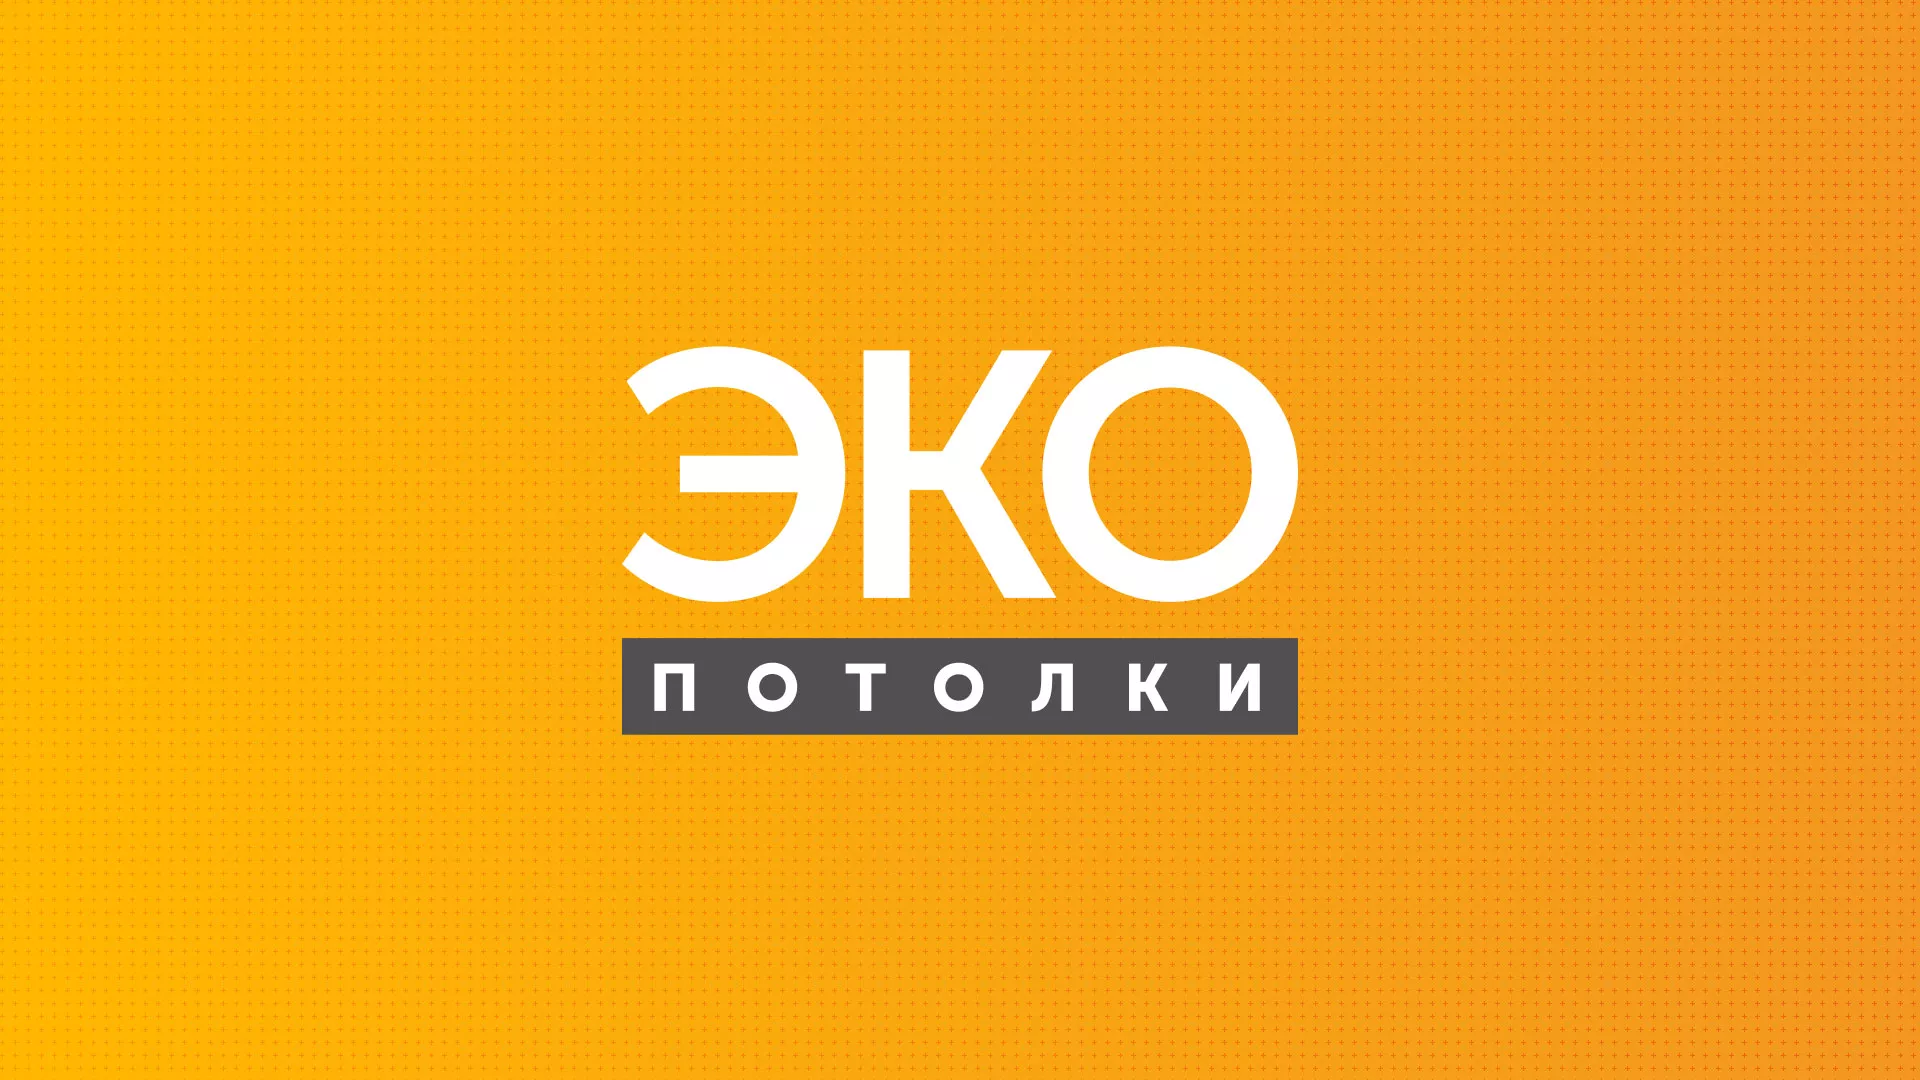 Разработка сайта по натяжным потолкам «Эко Потолки» в Октябрьске